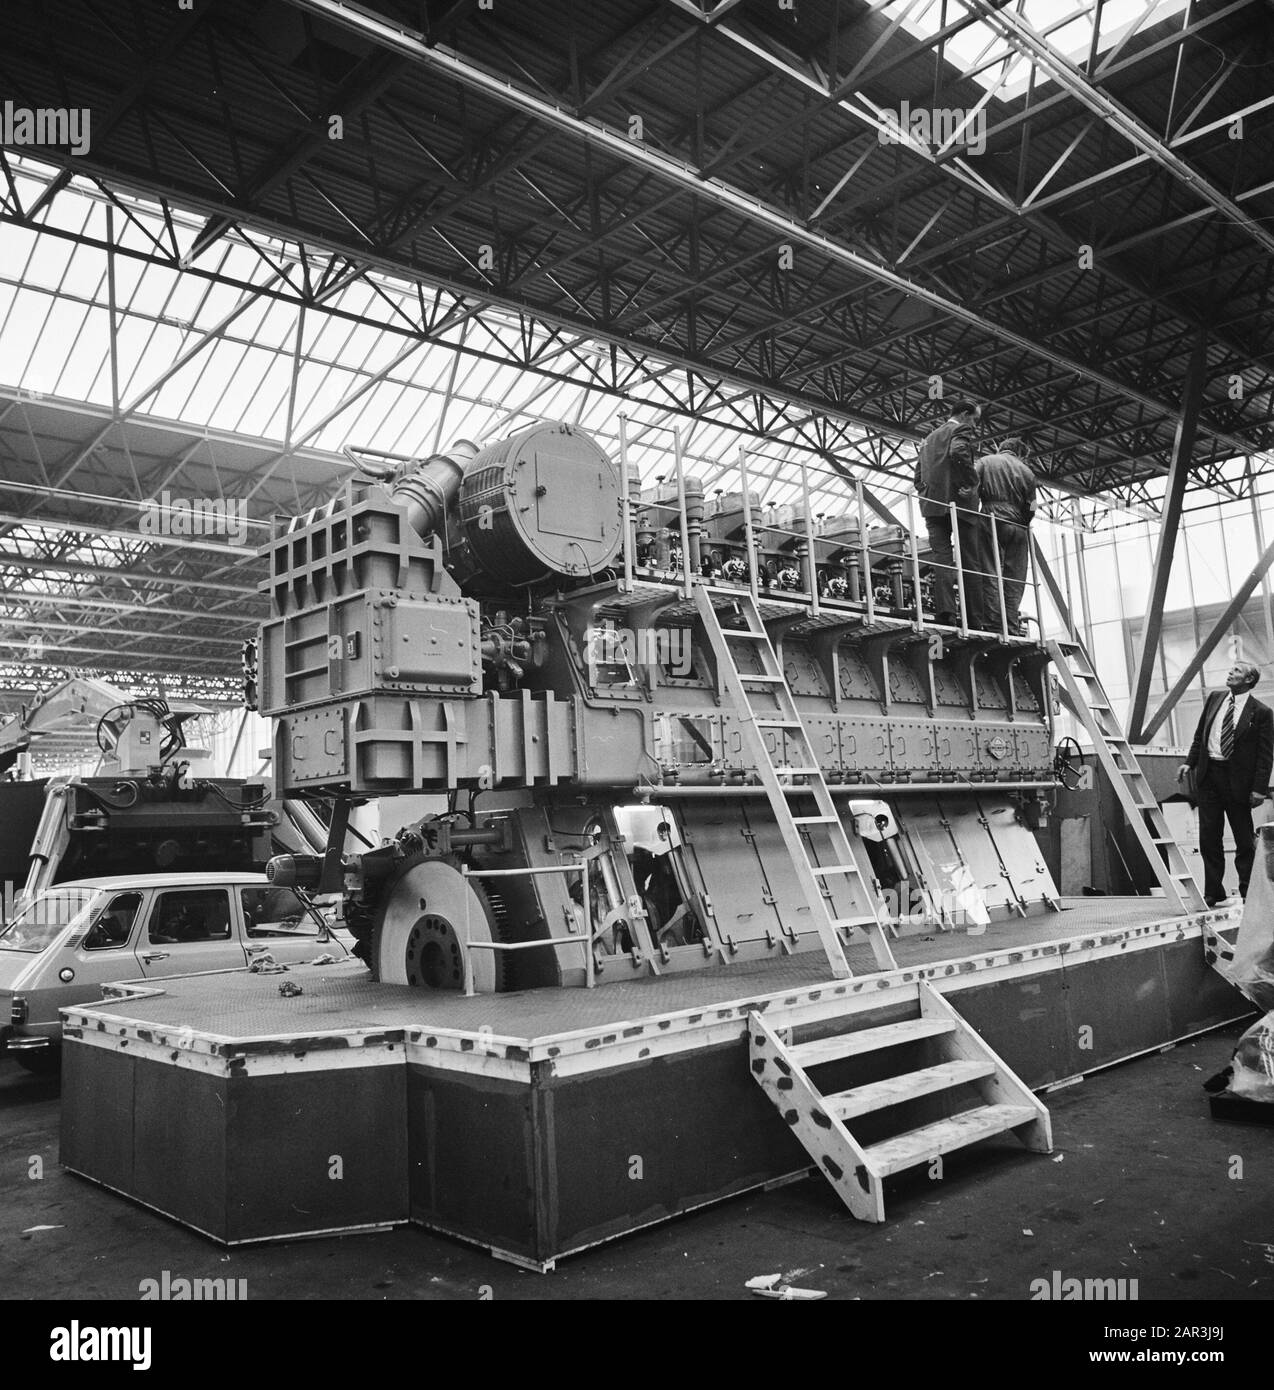 Préparatifs du salon Europort 73 au RAI un véhicule amphibie est établi Date: 9 novembre 1973 lieu: Amsterdam, Noord-Holland mots clés: Véhicules amphibies, foires Banque D'Images